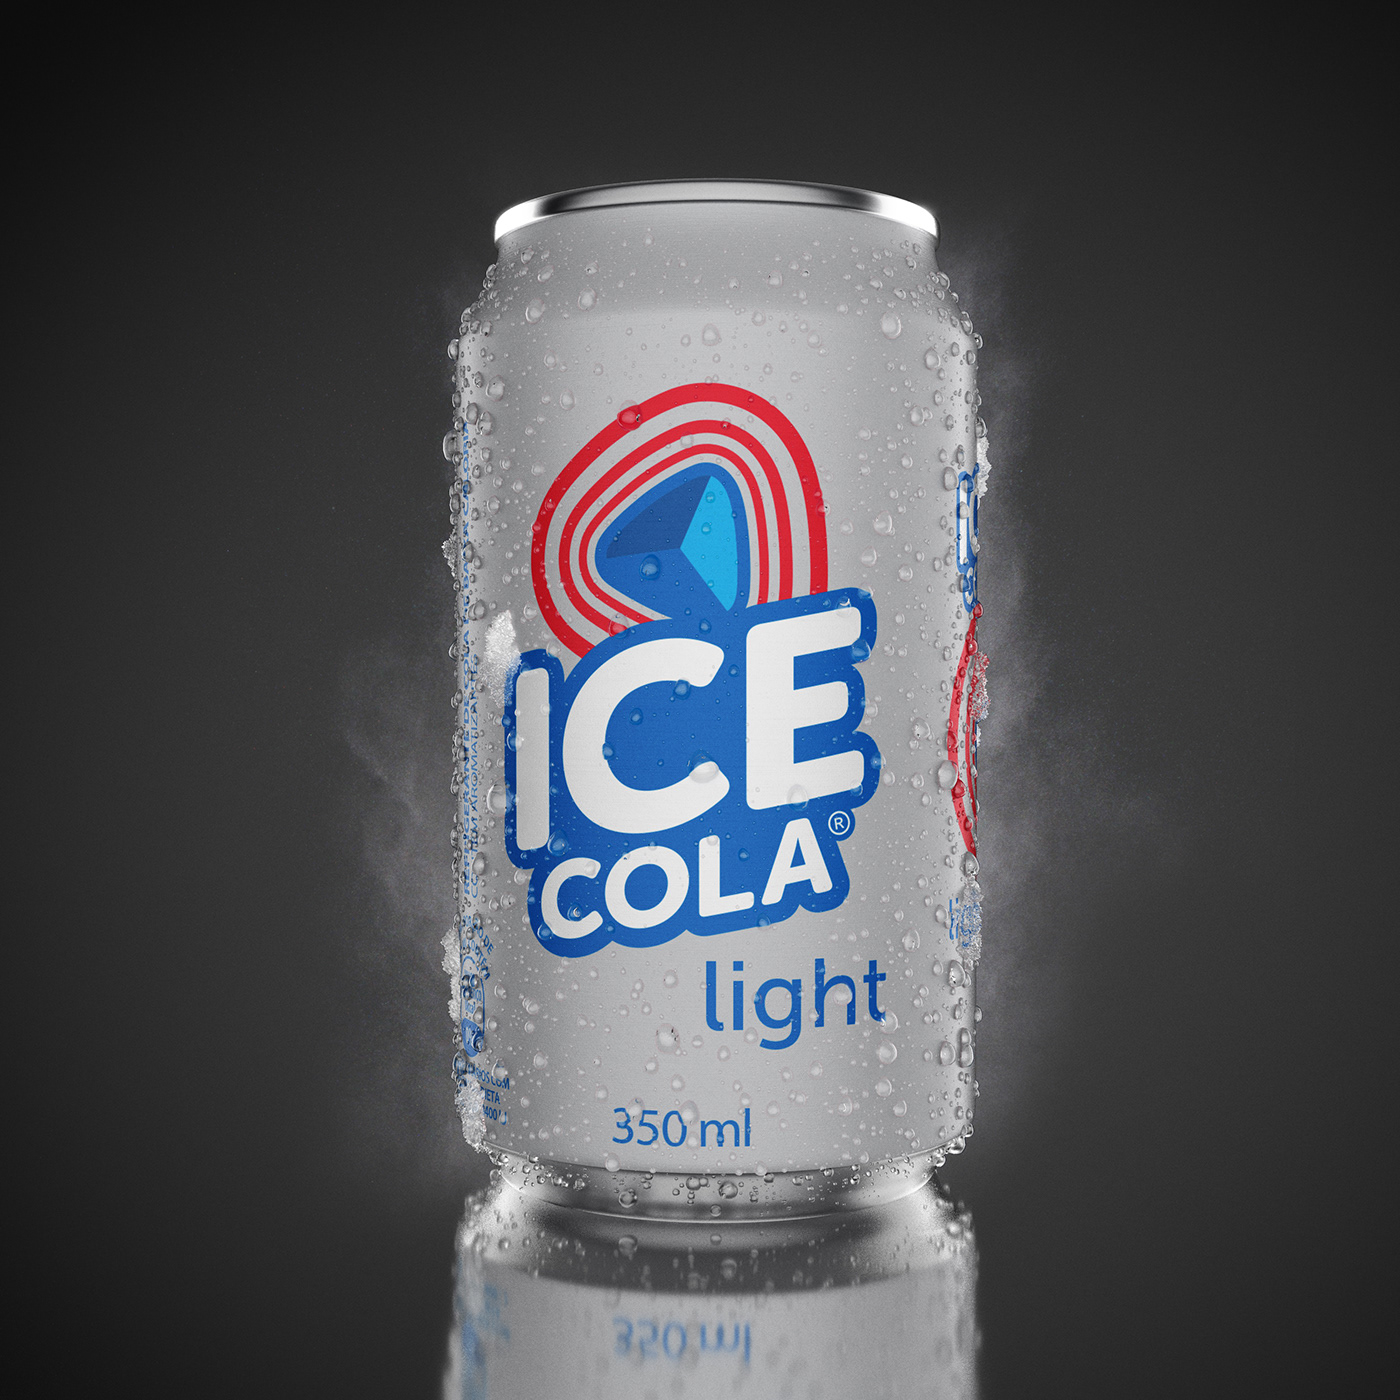 ice cola Coca Cola cola refrigerante coke lata produto 3D CGI